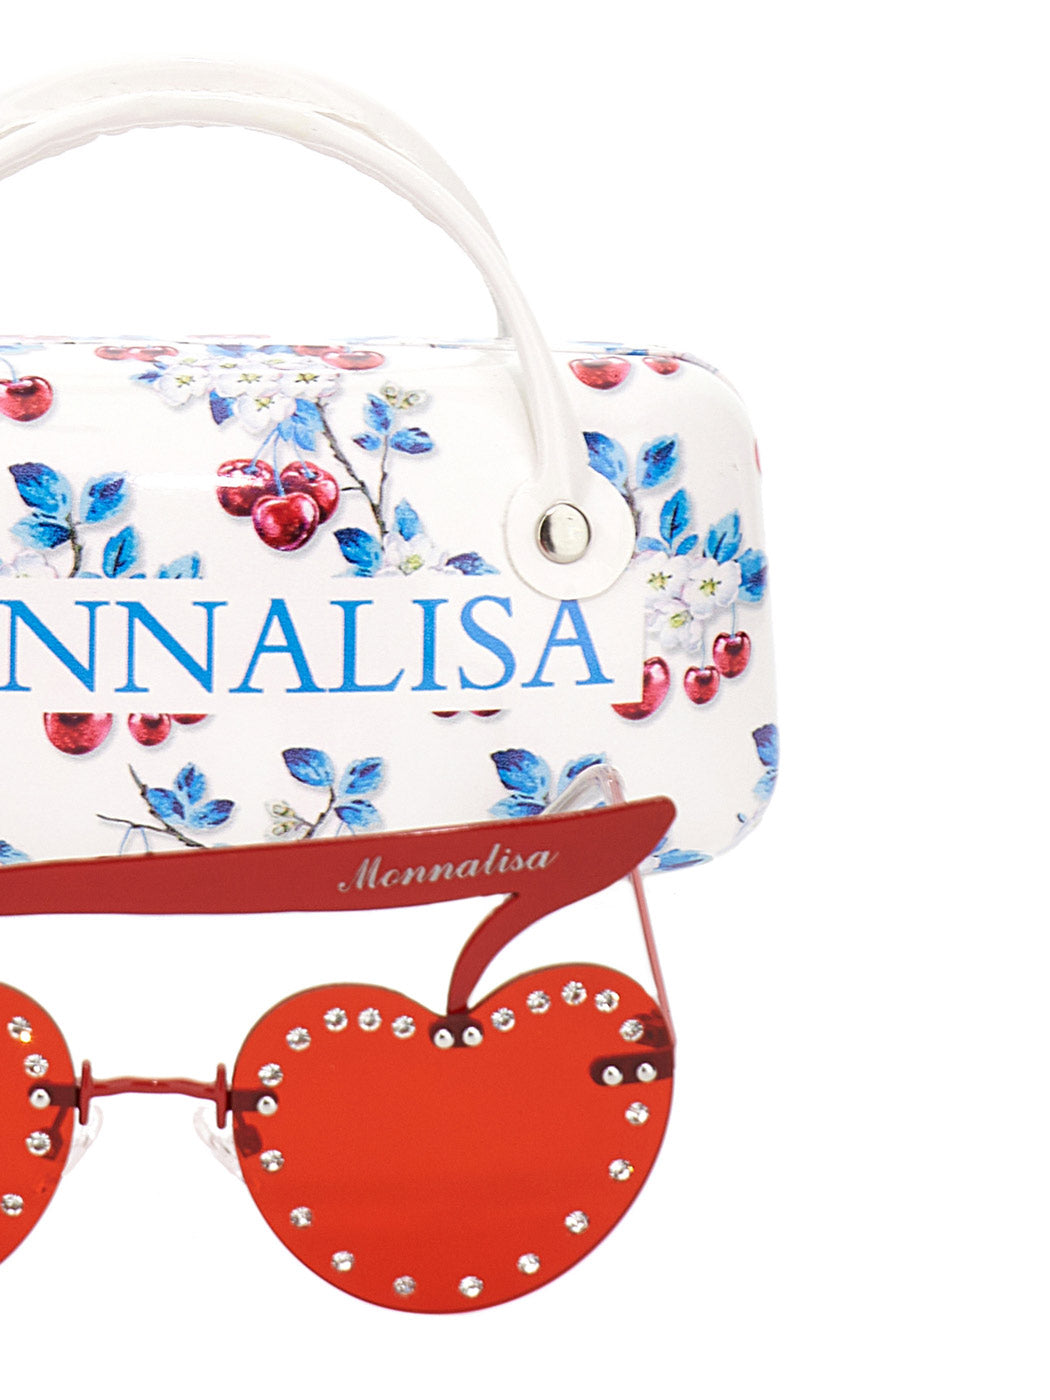 MONNALISA Cherry sunglasses - Red